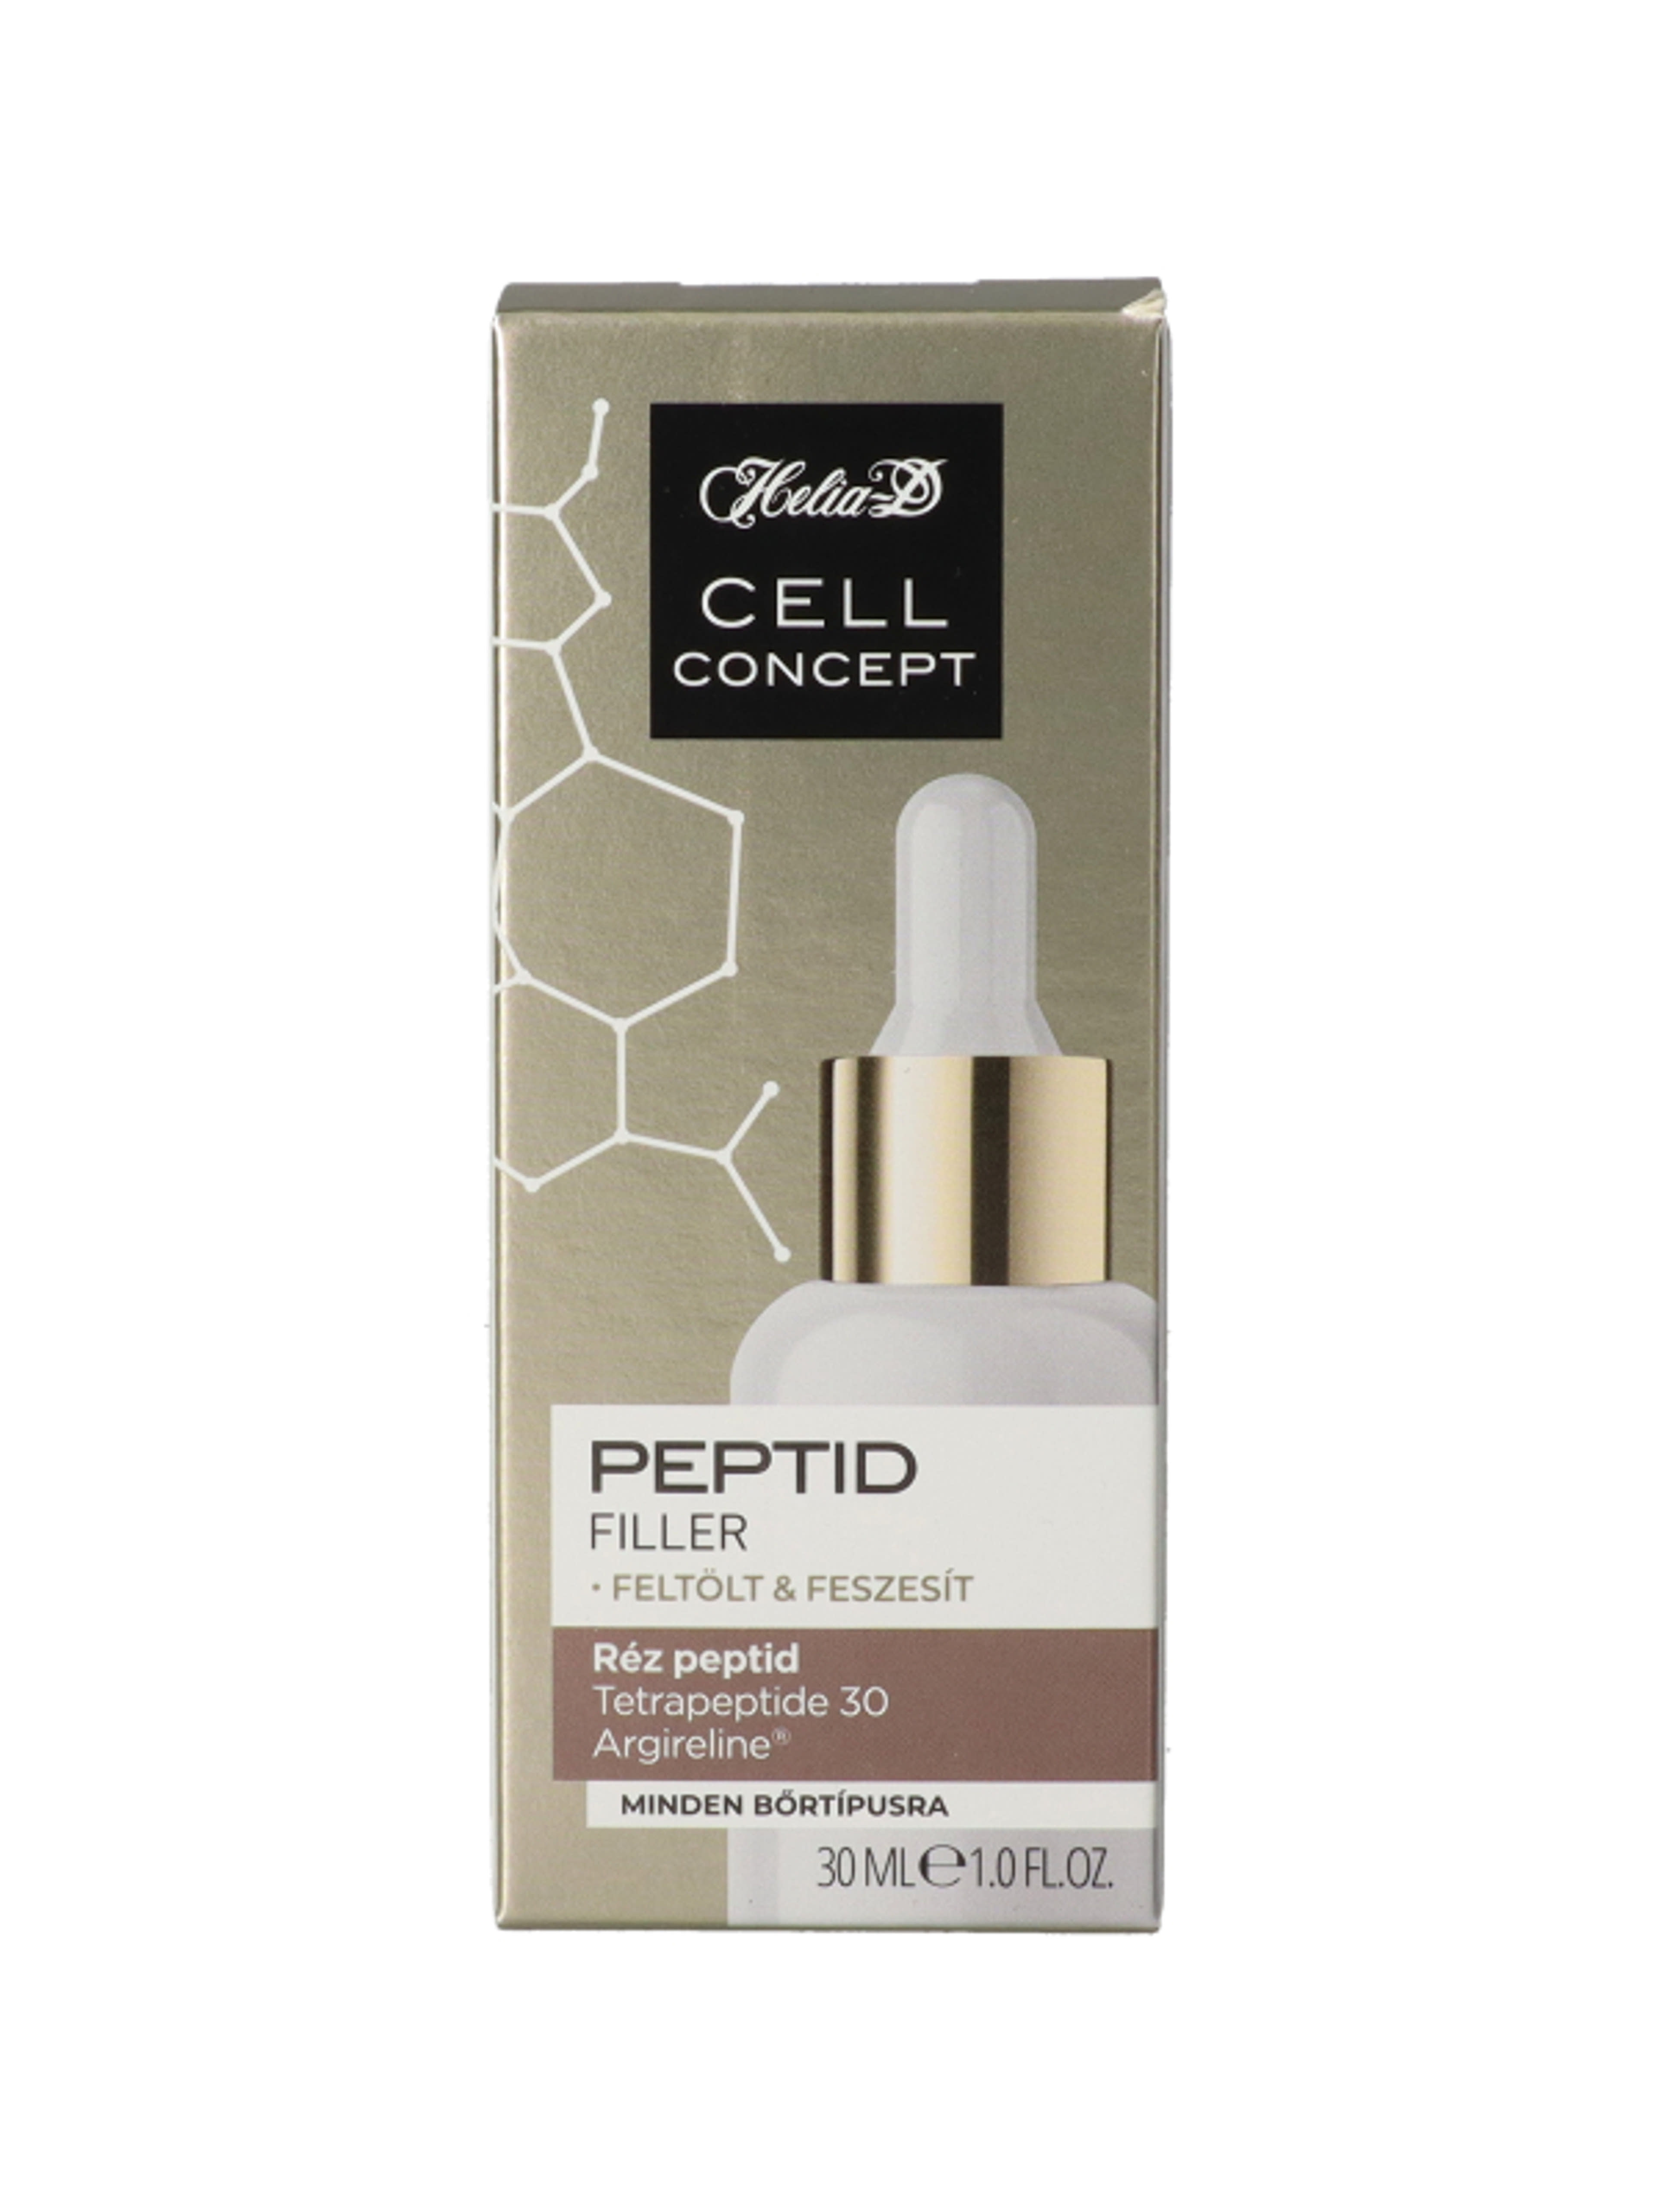 Helia-D Cell Concept Peptid szérum - 30 ml-1